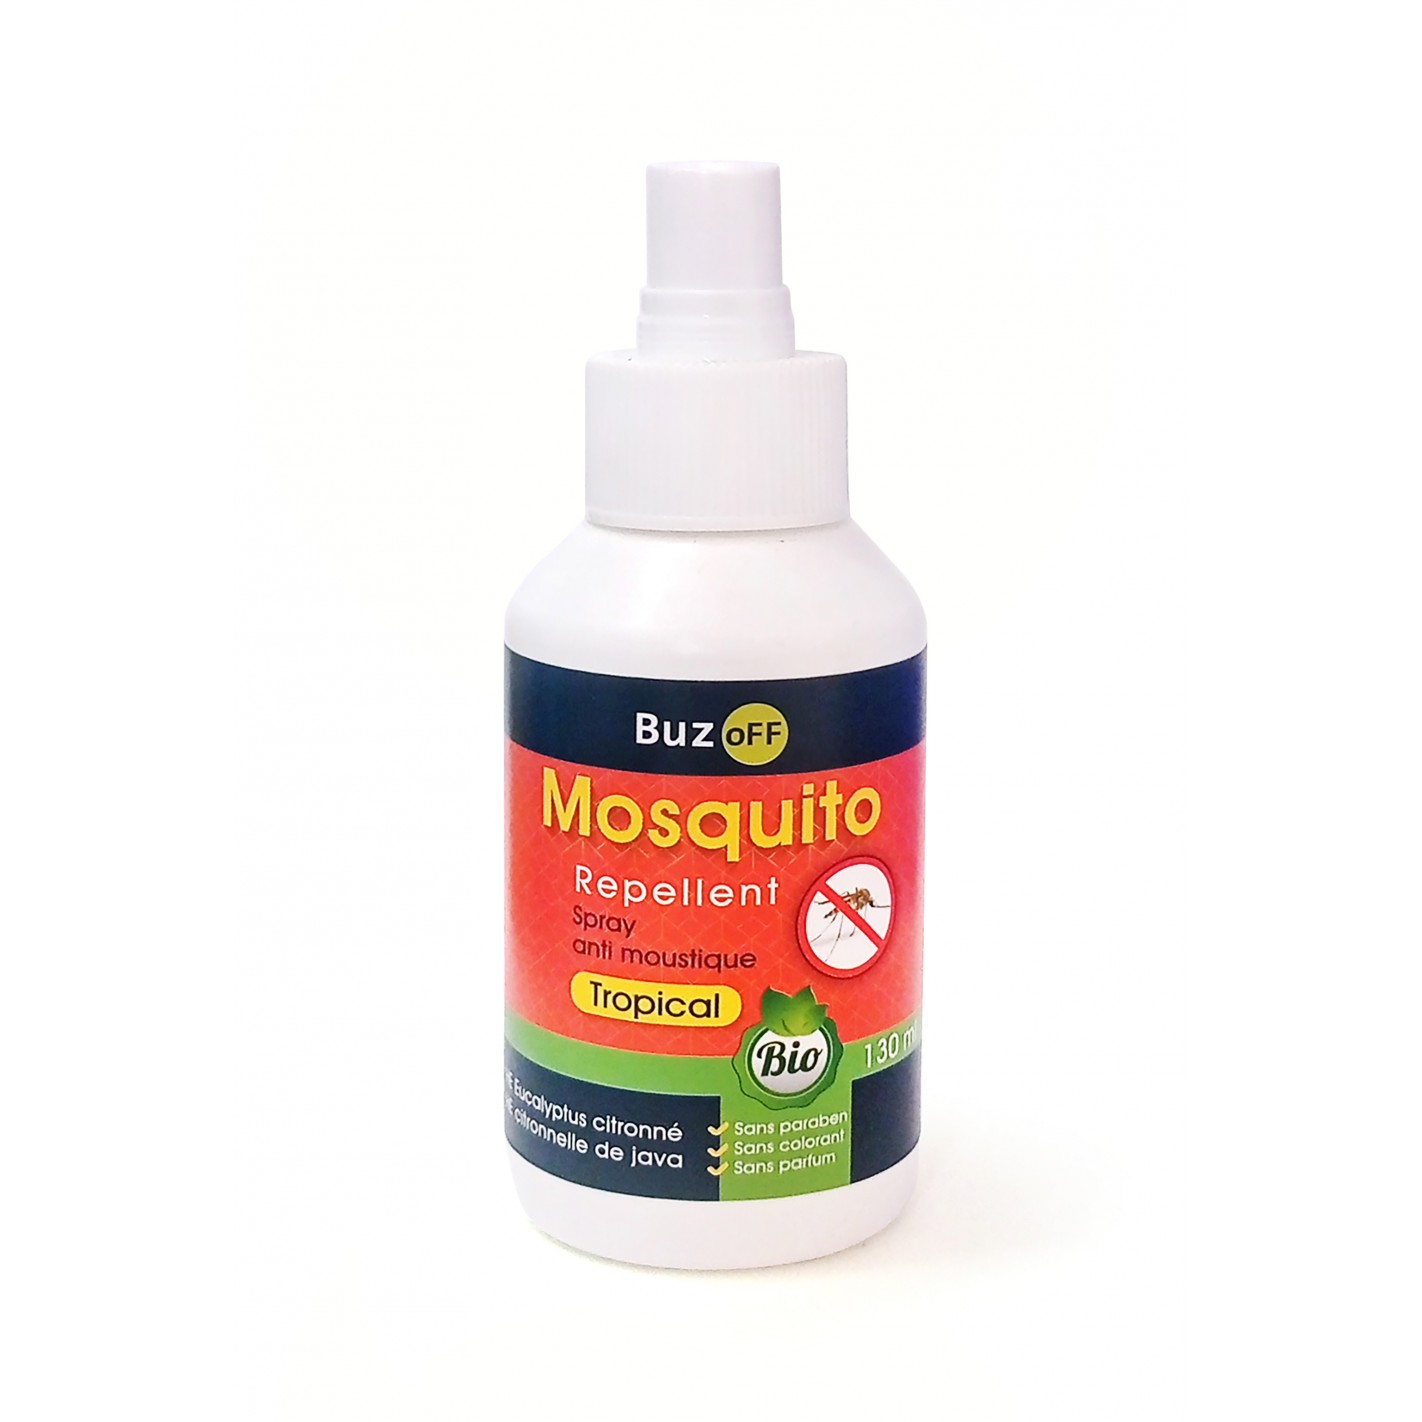 Spray Répulsif Anti-Moustiques, Huiles essentielles